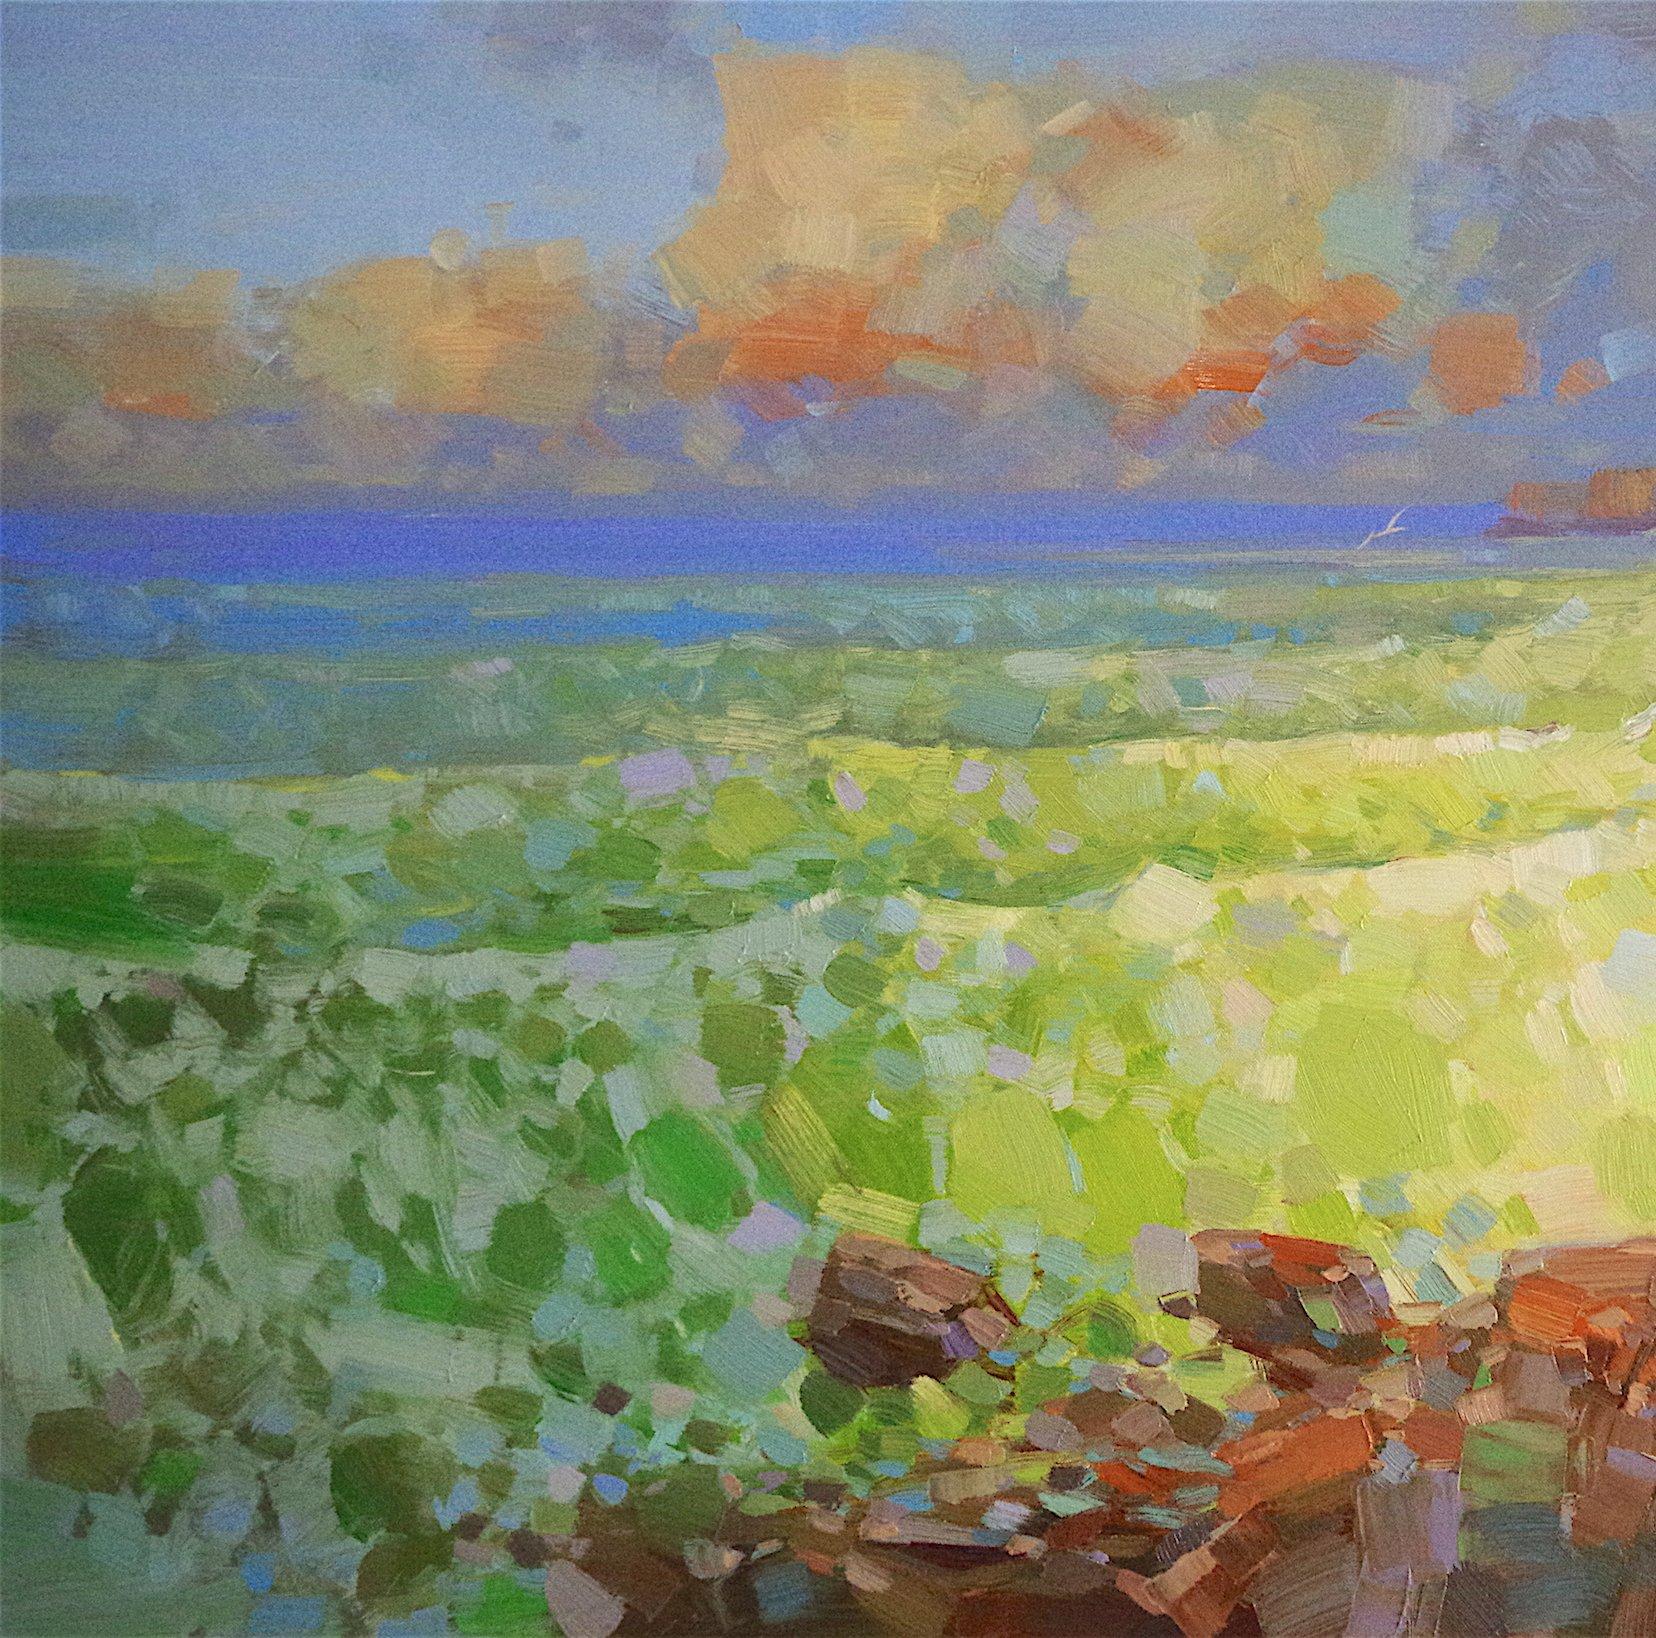 Emerald Ocean - Brown Landscape Painting by Vahe Yeremyan